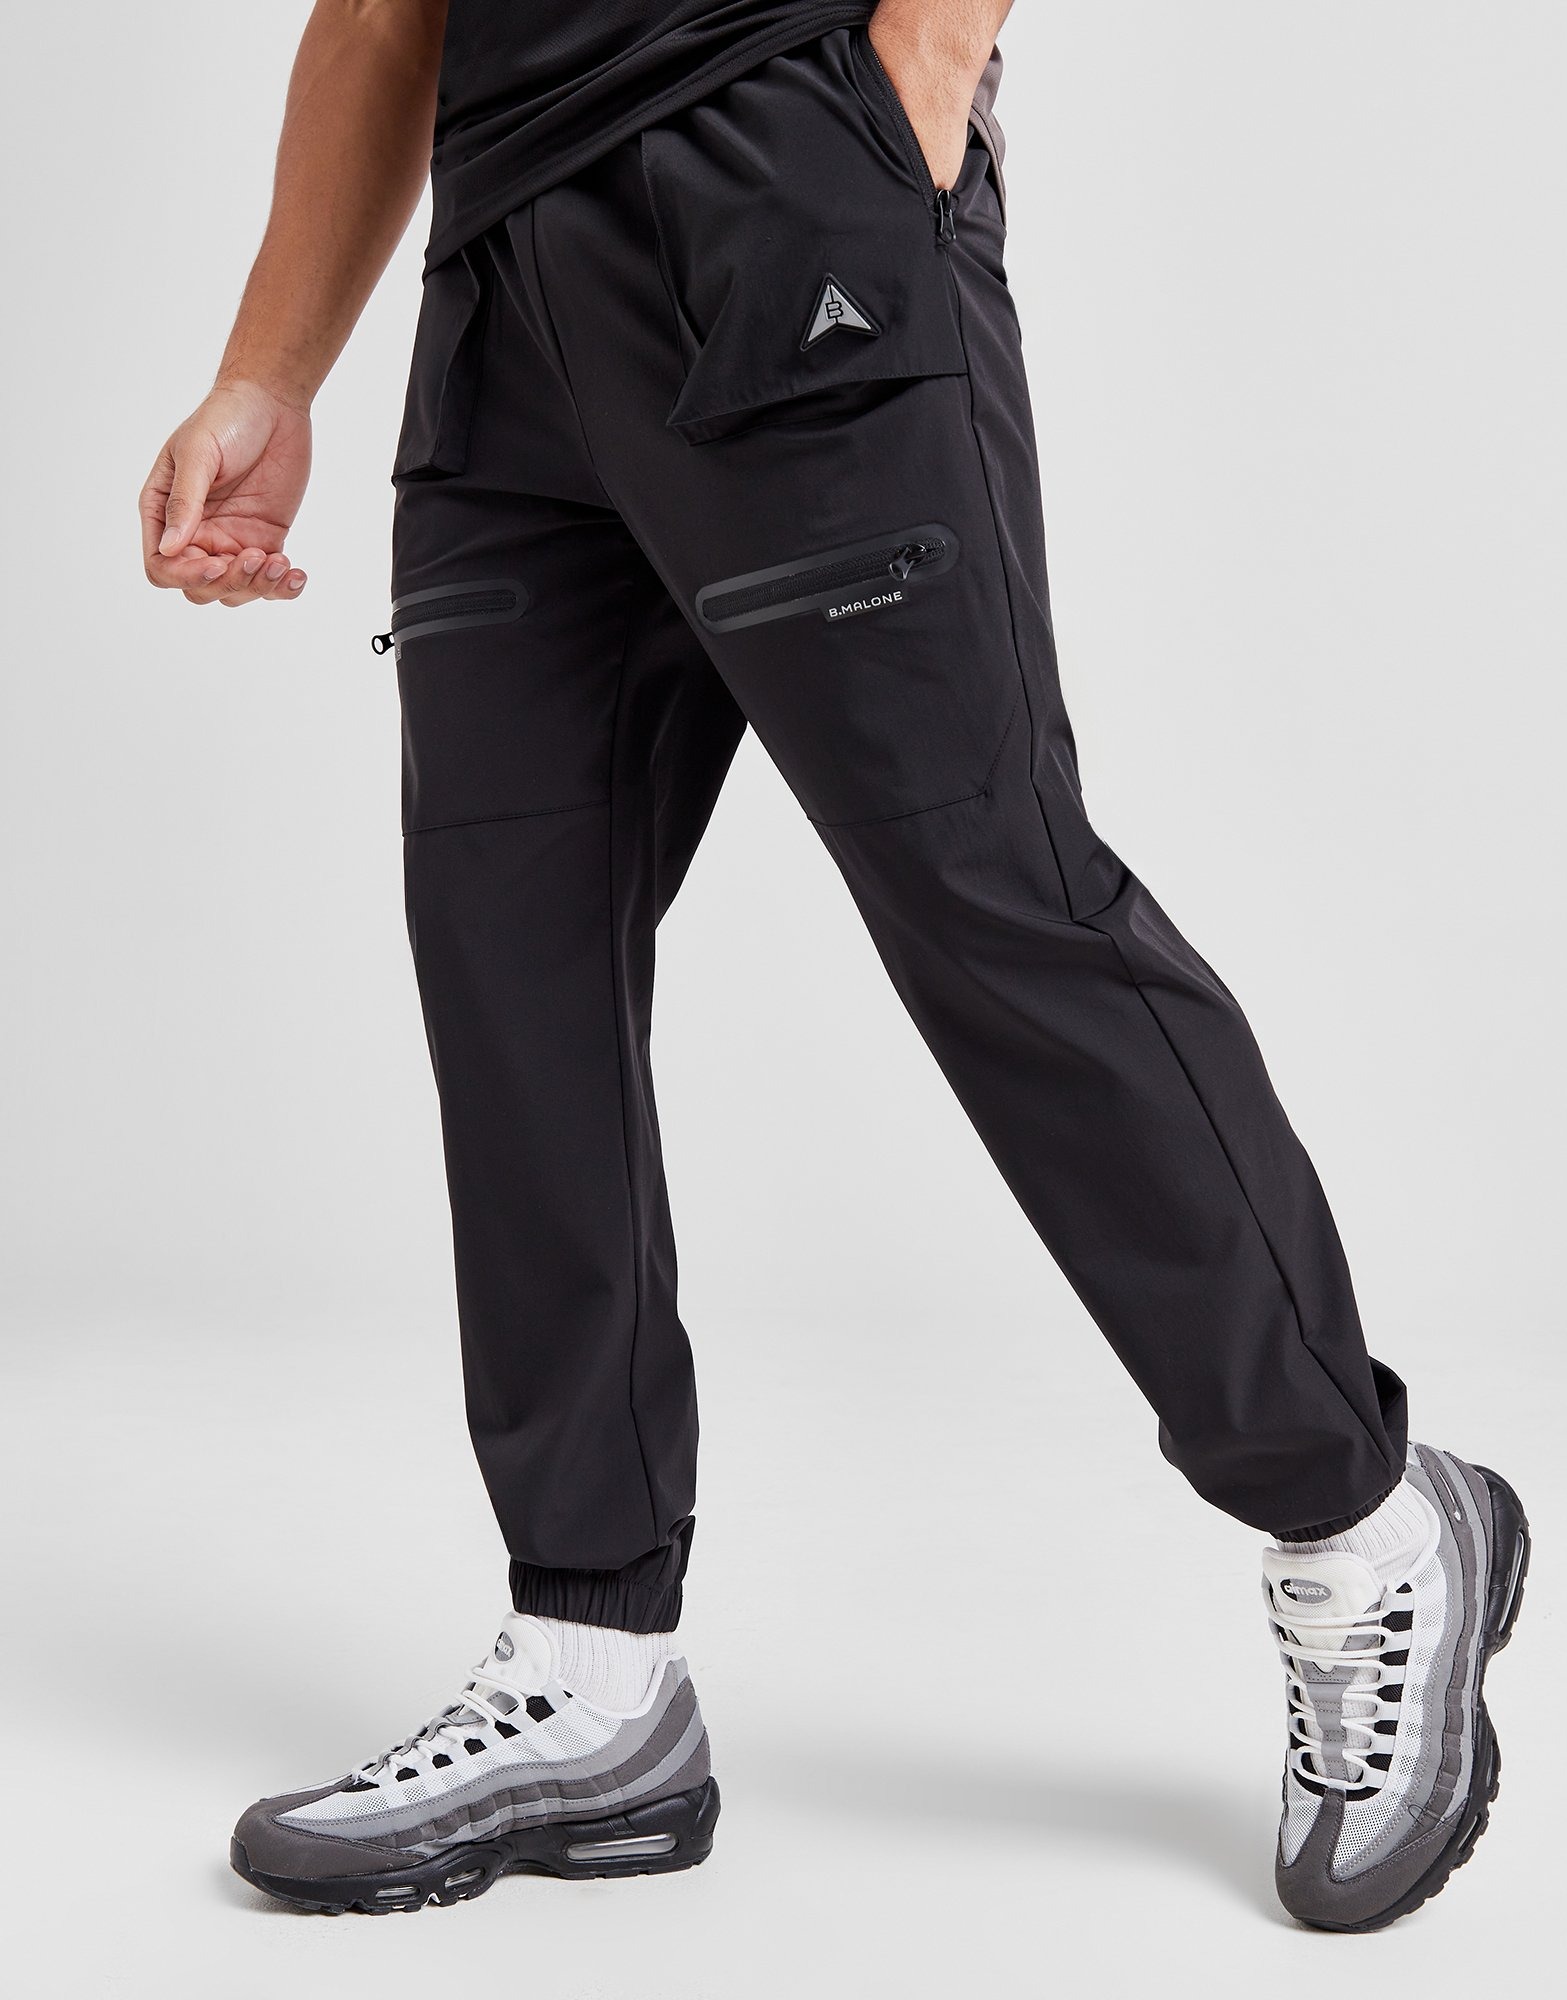 Selected Homme - Pantalon de jogging slim à chevilles resserrées